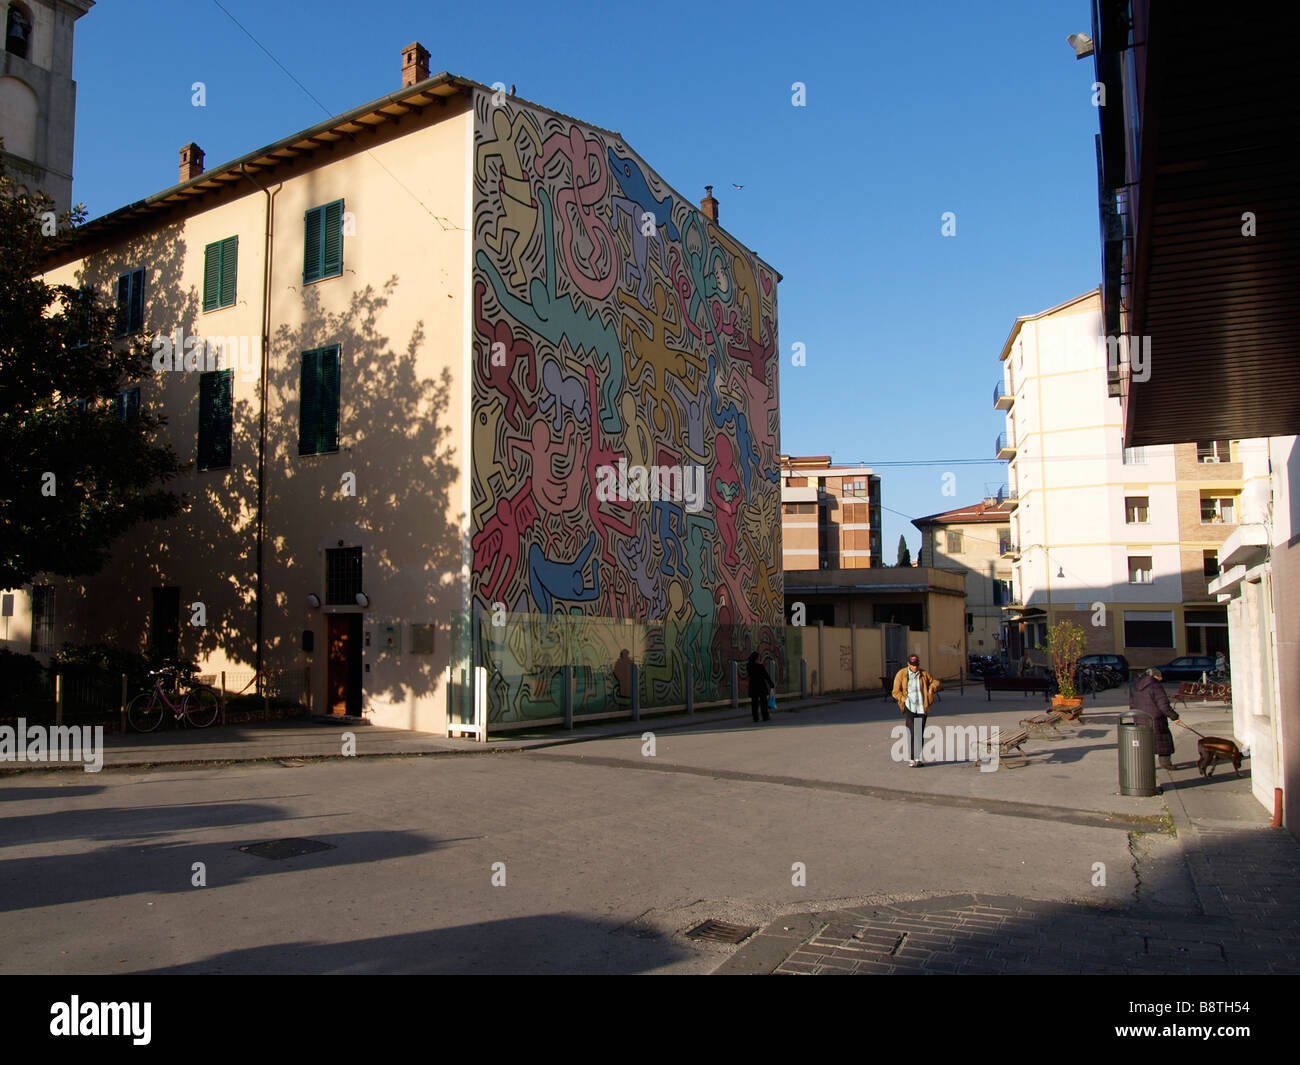 Grande murale colorée par le célèbre artiste de graffiti américain Keith Haring sur le côté d'un immeuble à Pise Toscane Italie Banque D'Images